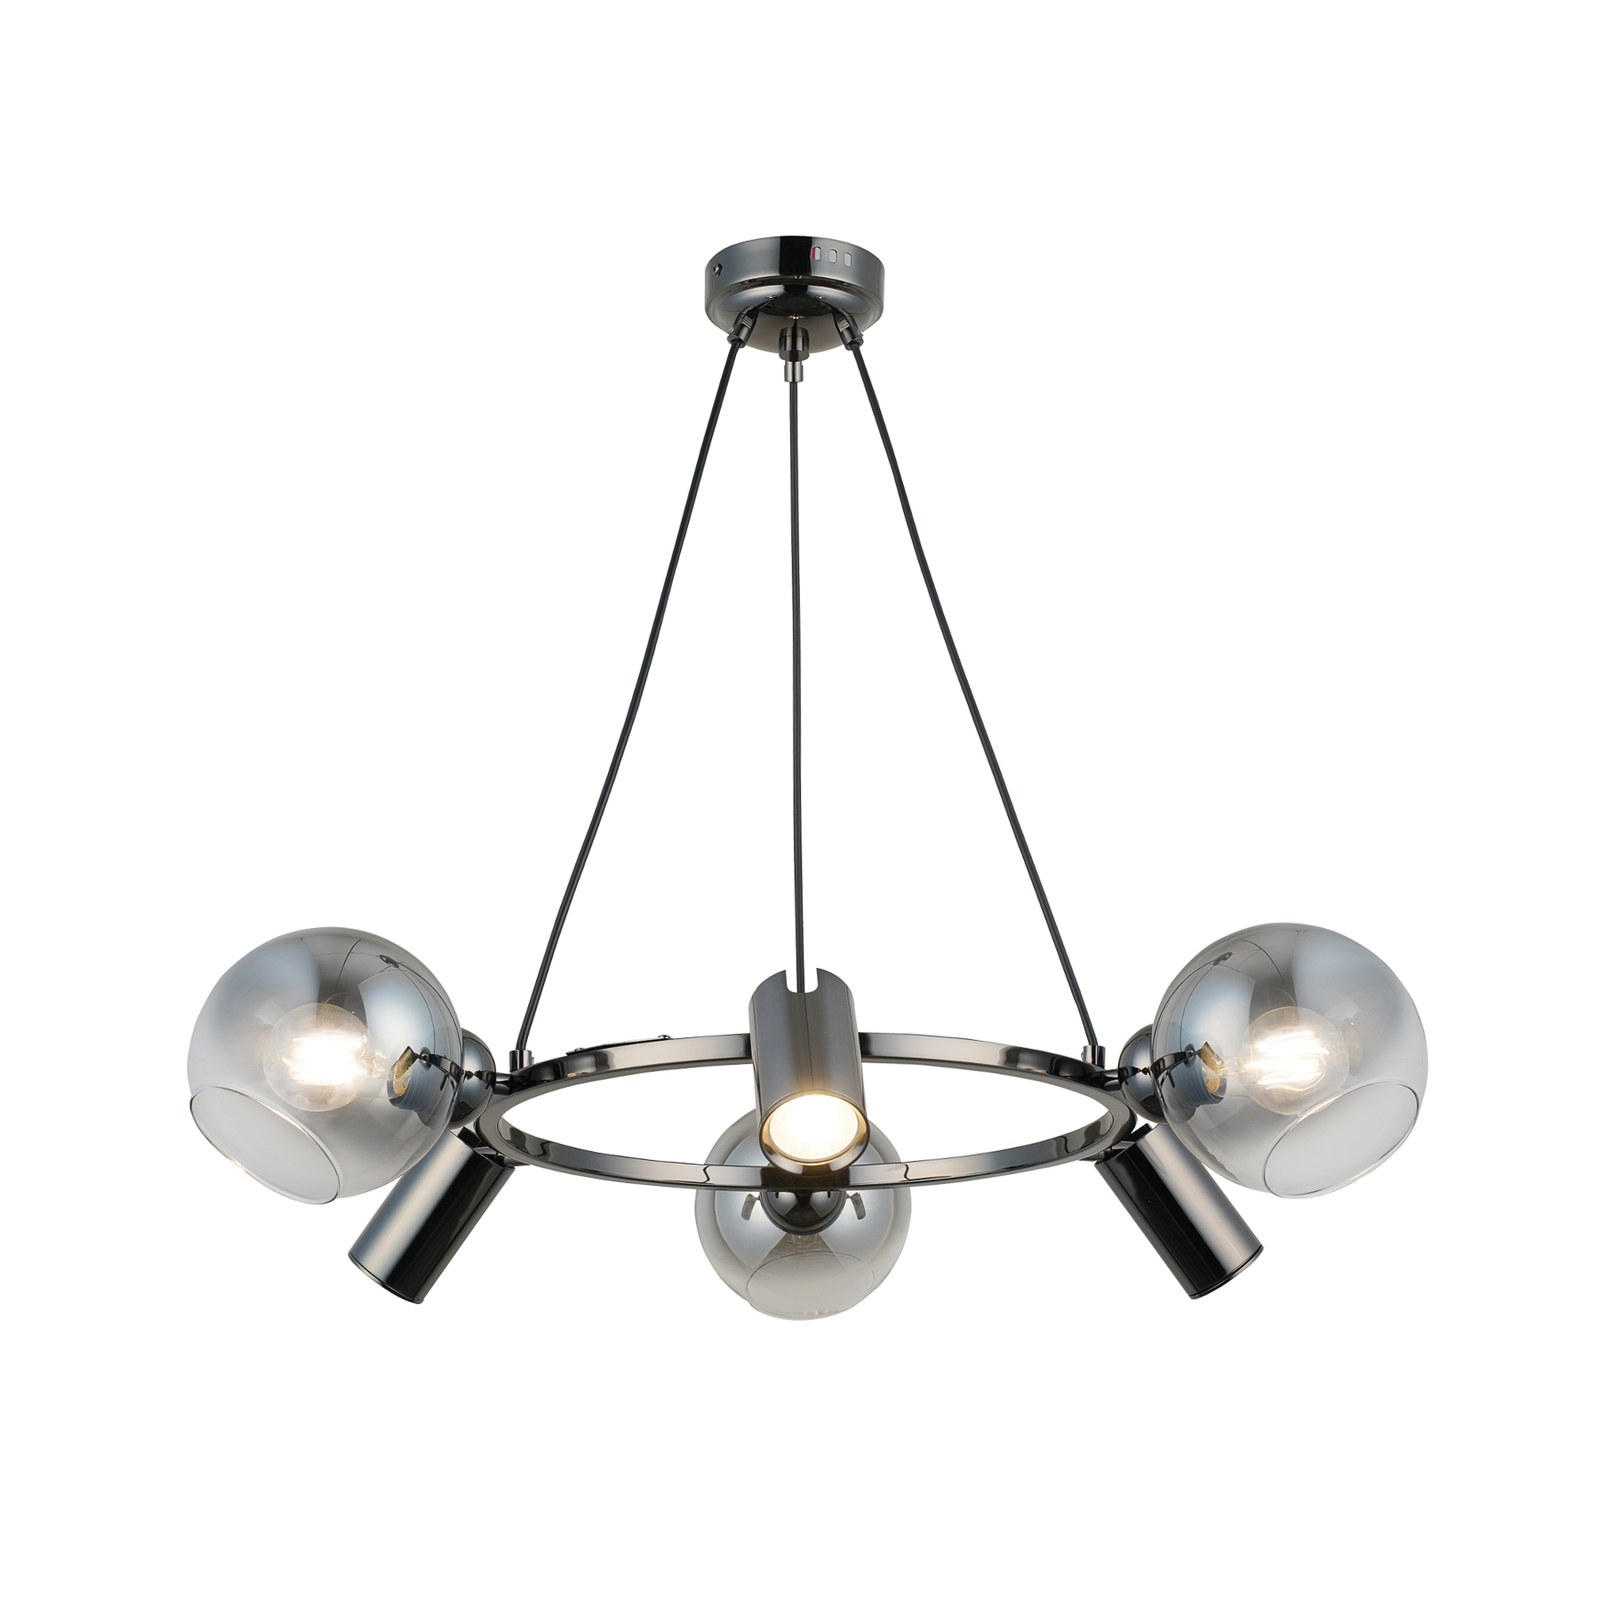 Hanglamp Zerde 3+3 Ø 67 cm zwart-chroom 6-lamps